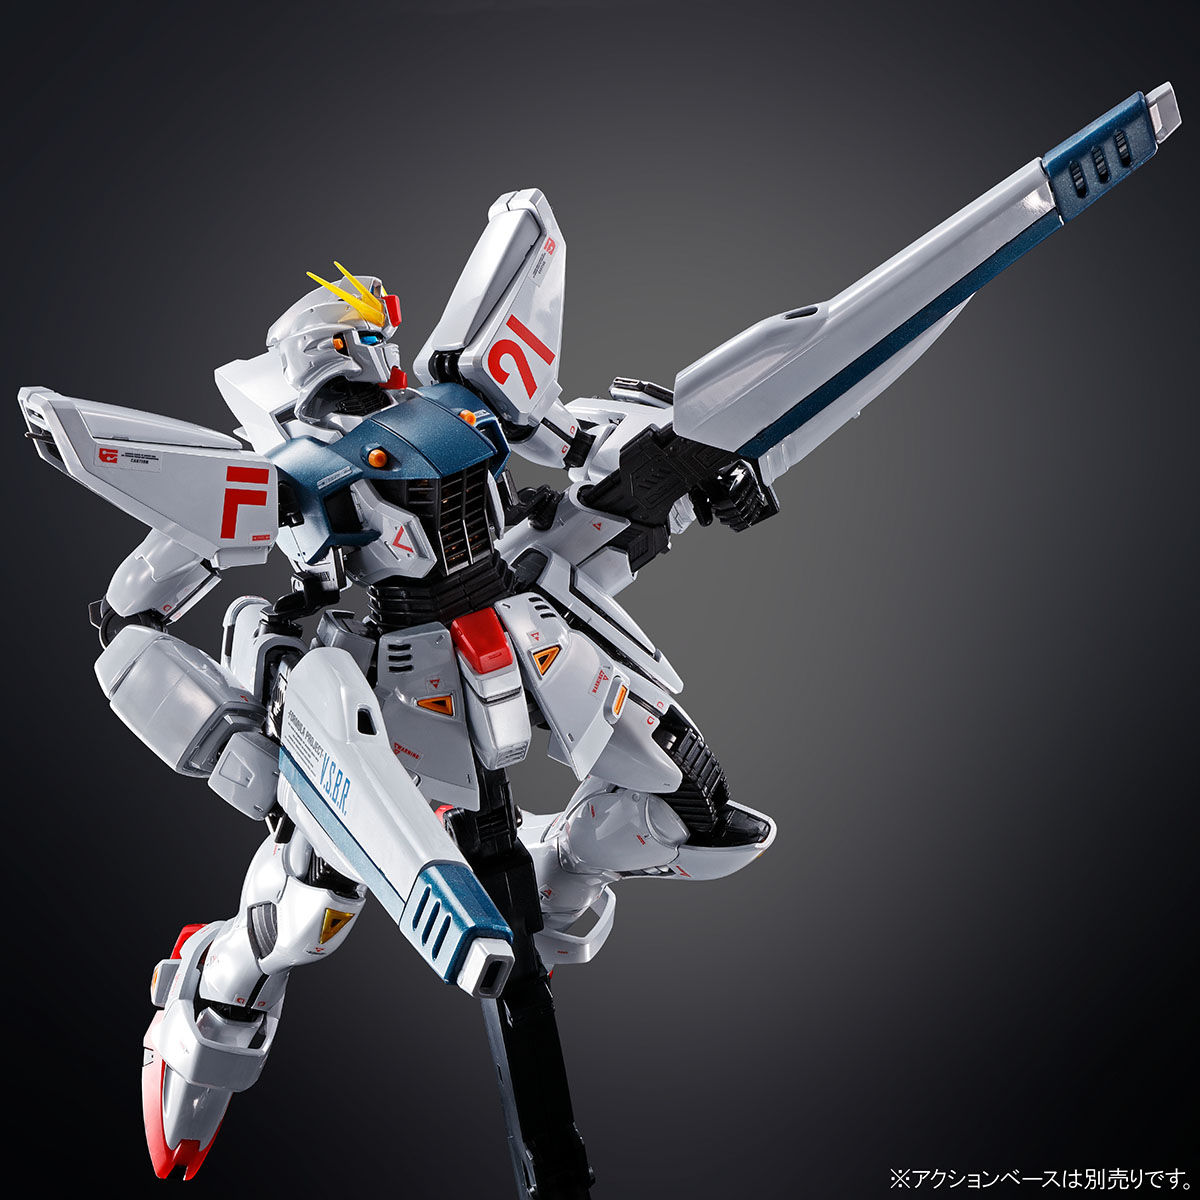 MG 1/100 Formula 91 Gundam F91 Ver.2.0(Titanium Finish)